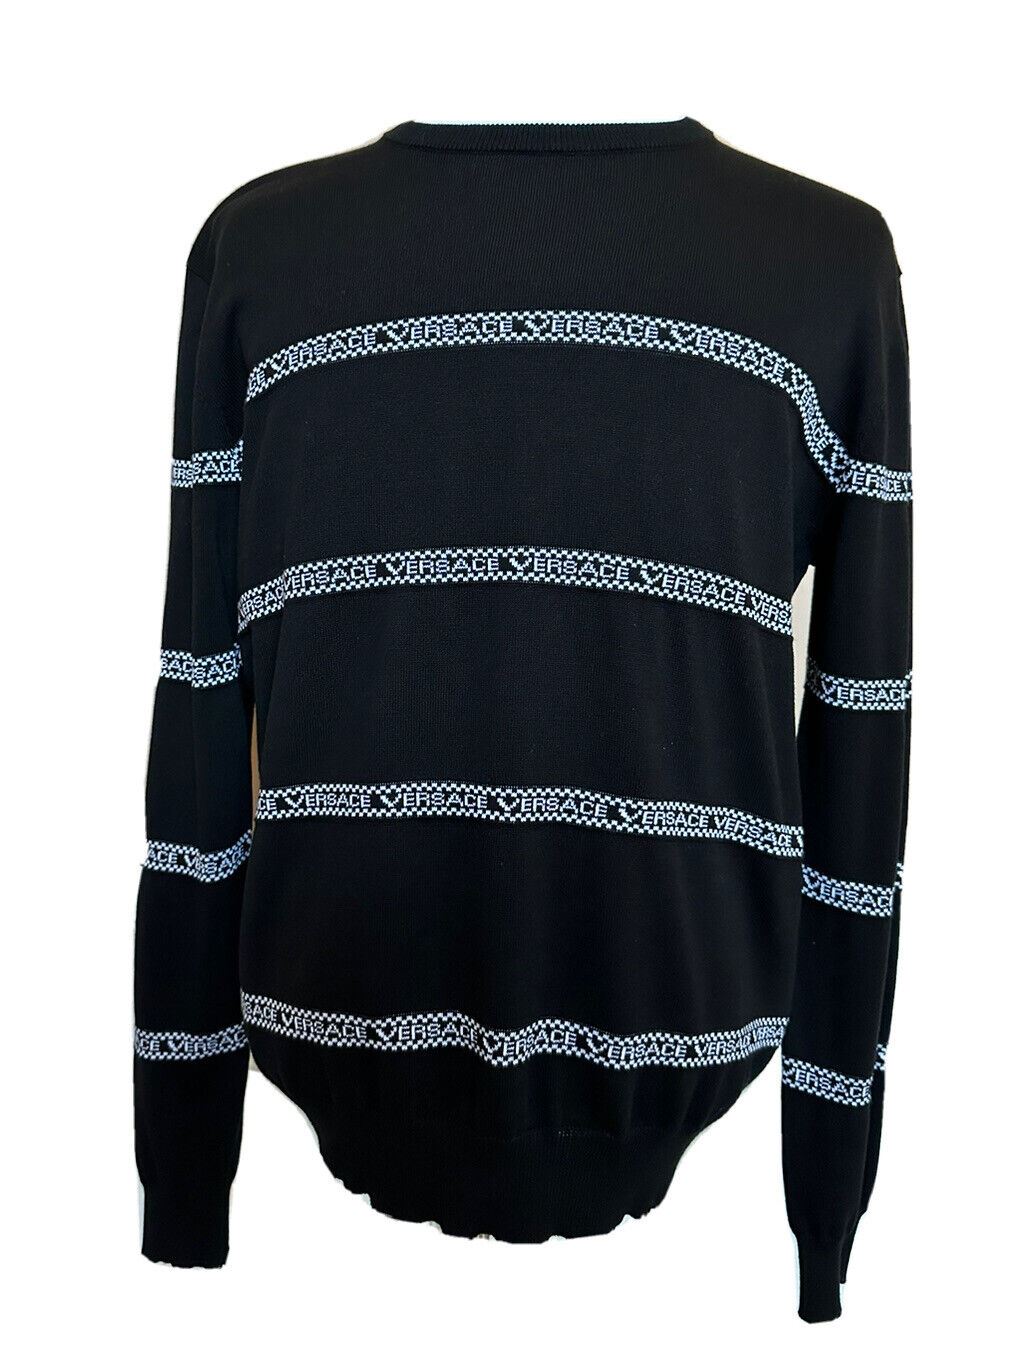 Neu mit Etikett: 850 $ Versace Logo Baumwollstrickpullover Schwarz 50 (Groß) Italien A89468S